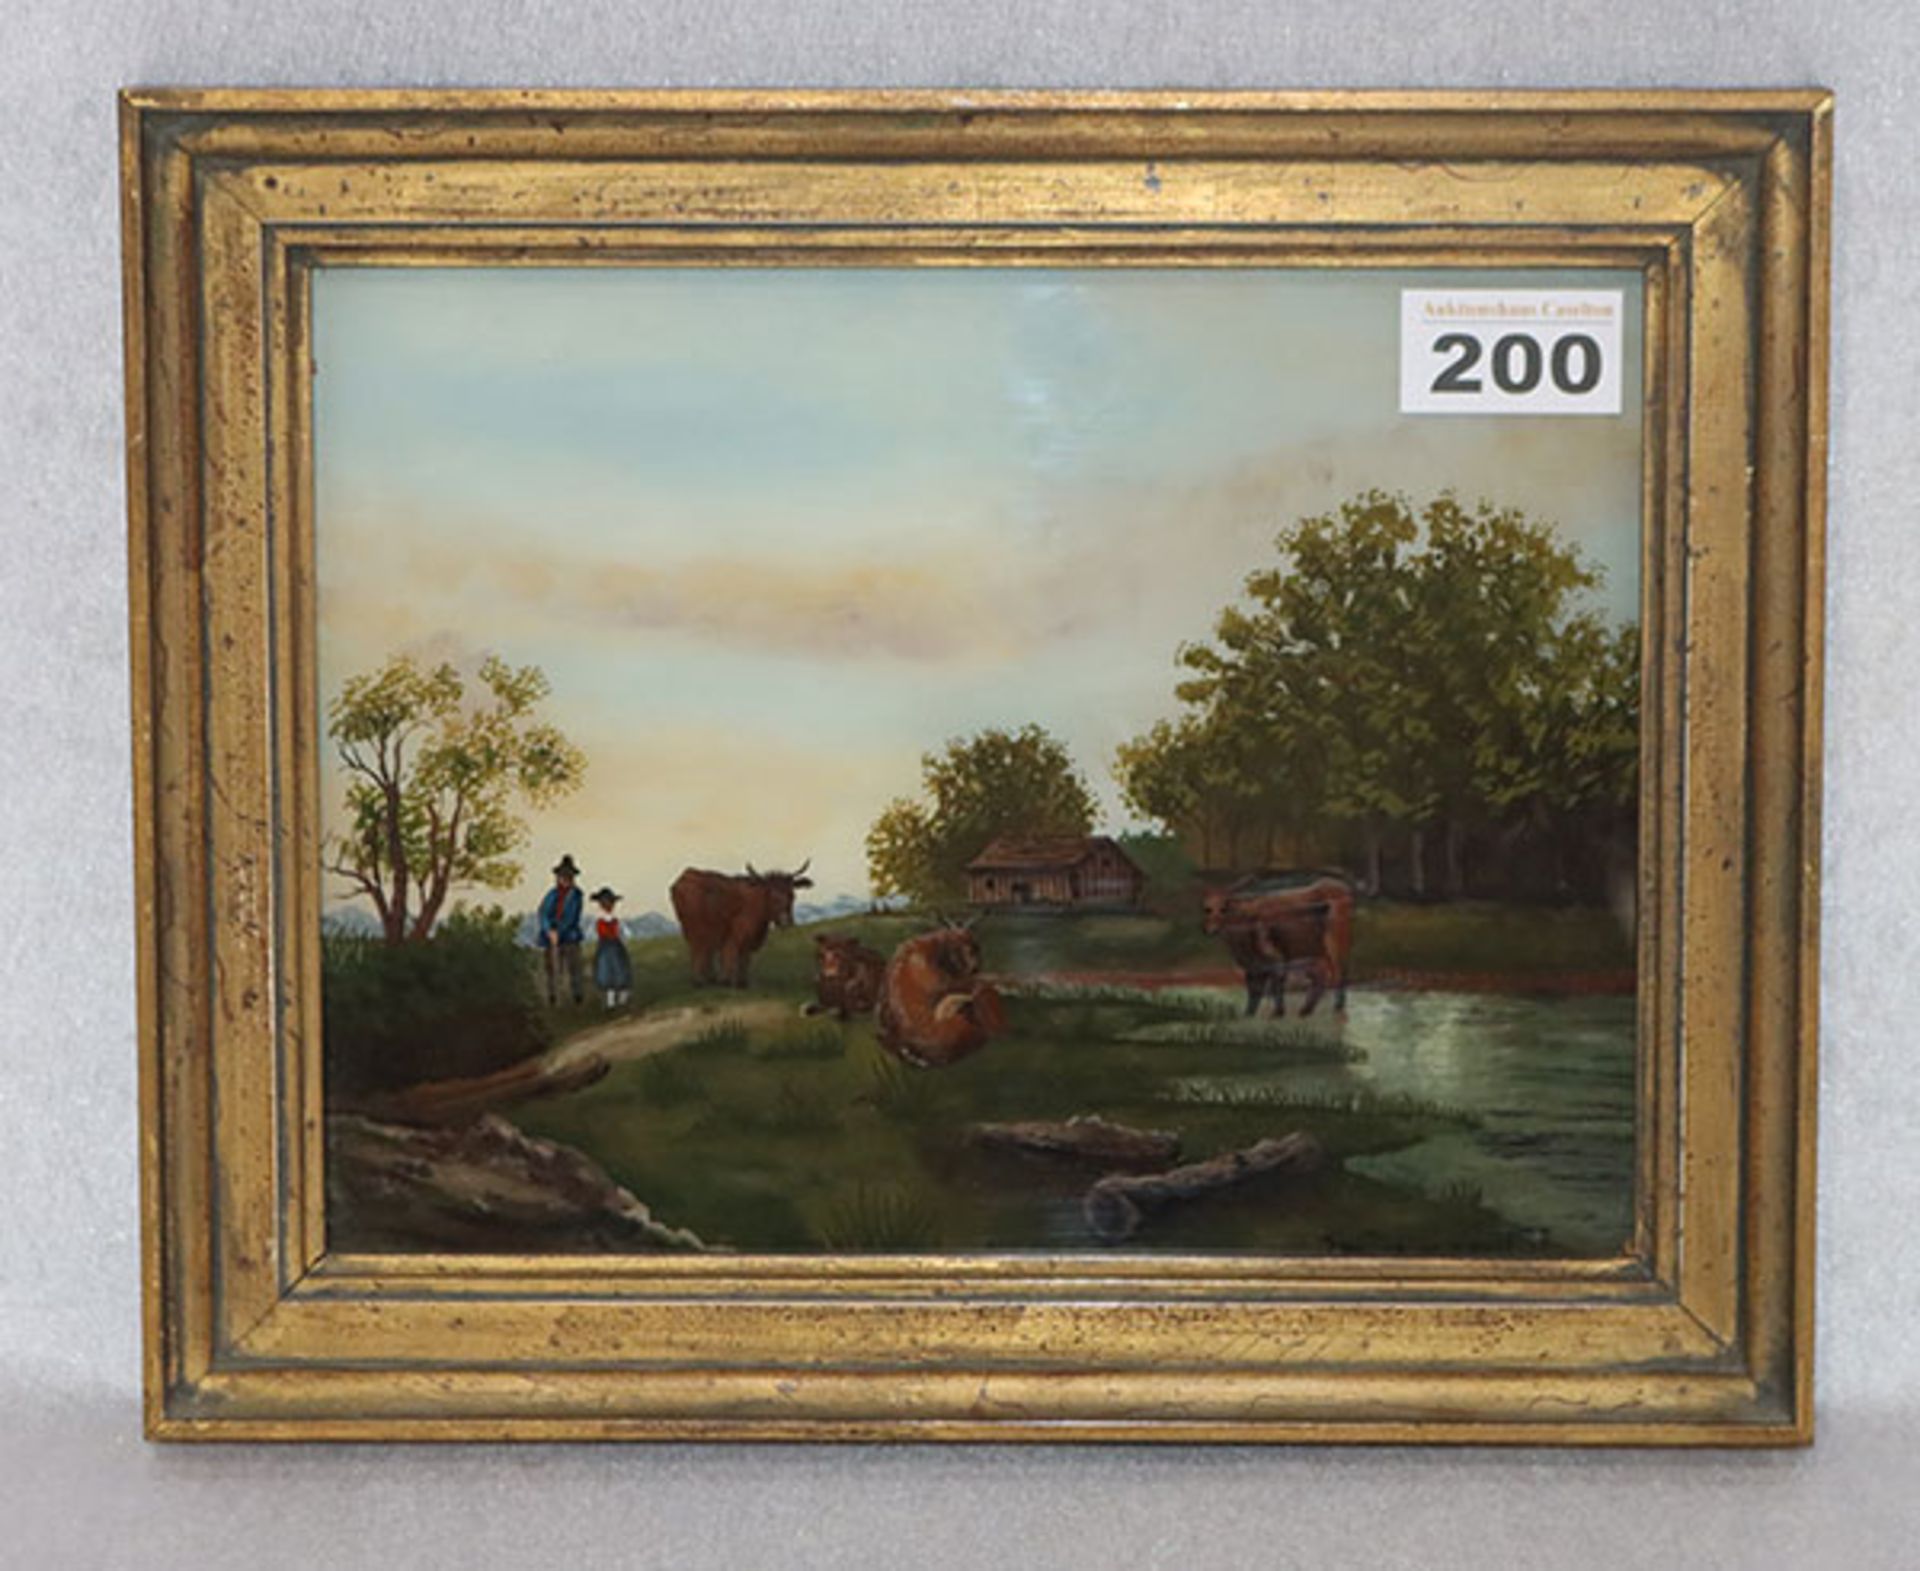 Hinterglasbild 'Landschafts-Szenerie mit Bauer und Kühen', undeutlich signiert, gerahmt, Rahmen